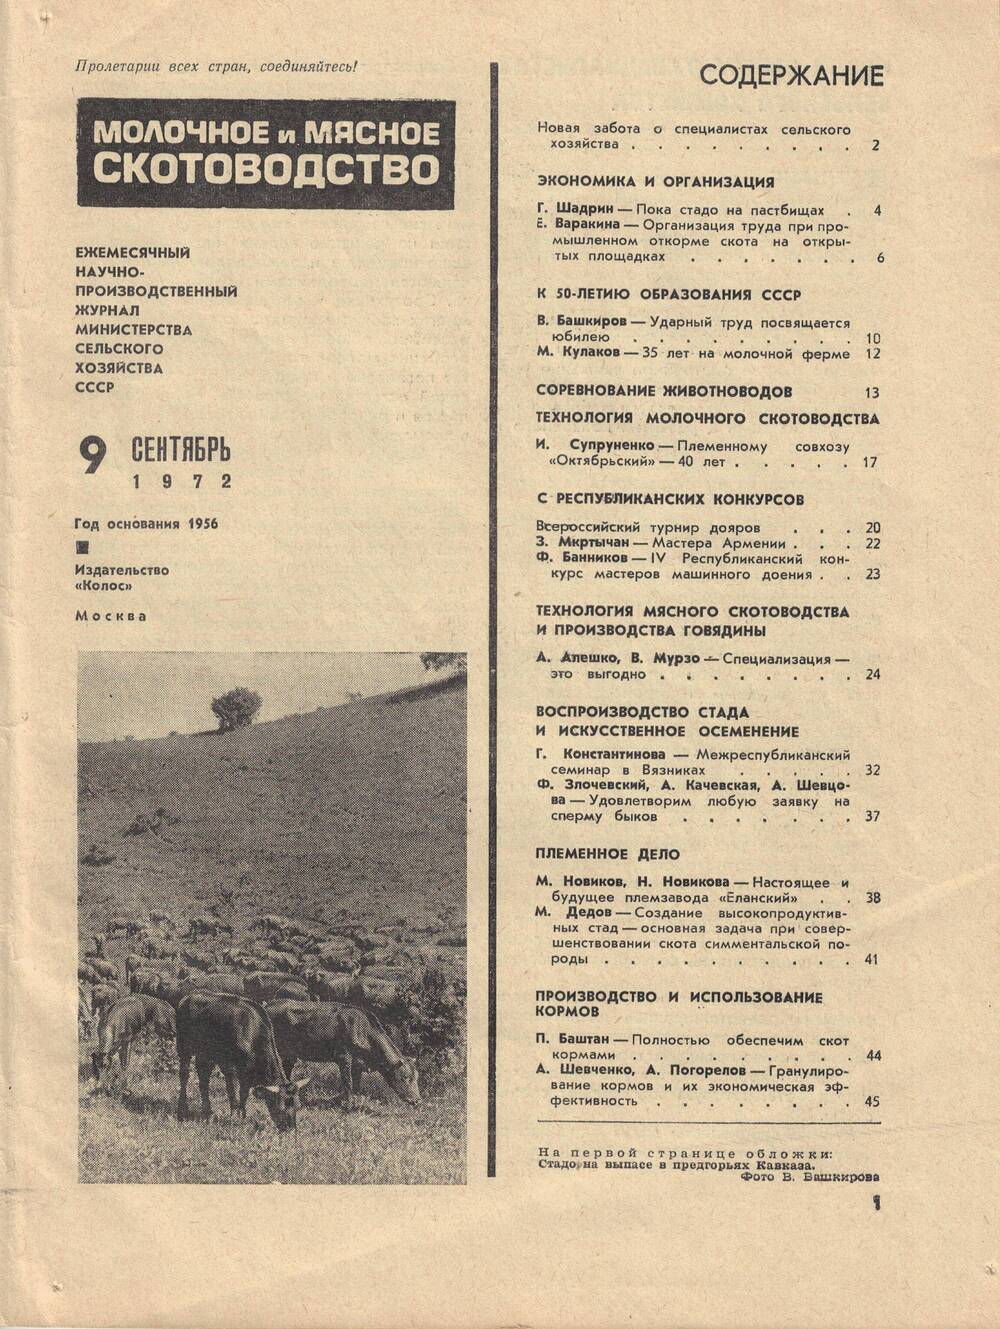 Ежемесячный научно-производственный журнал министерства сельского хозяйства СССР  Молочное и мясное скотоводство №9 от 1972 г.